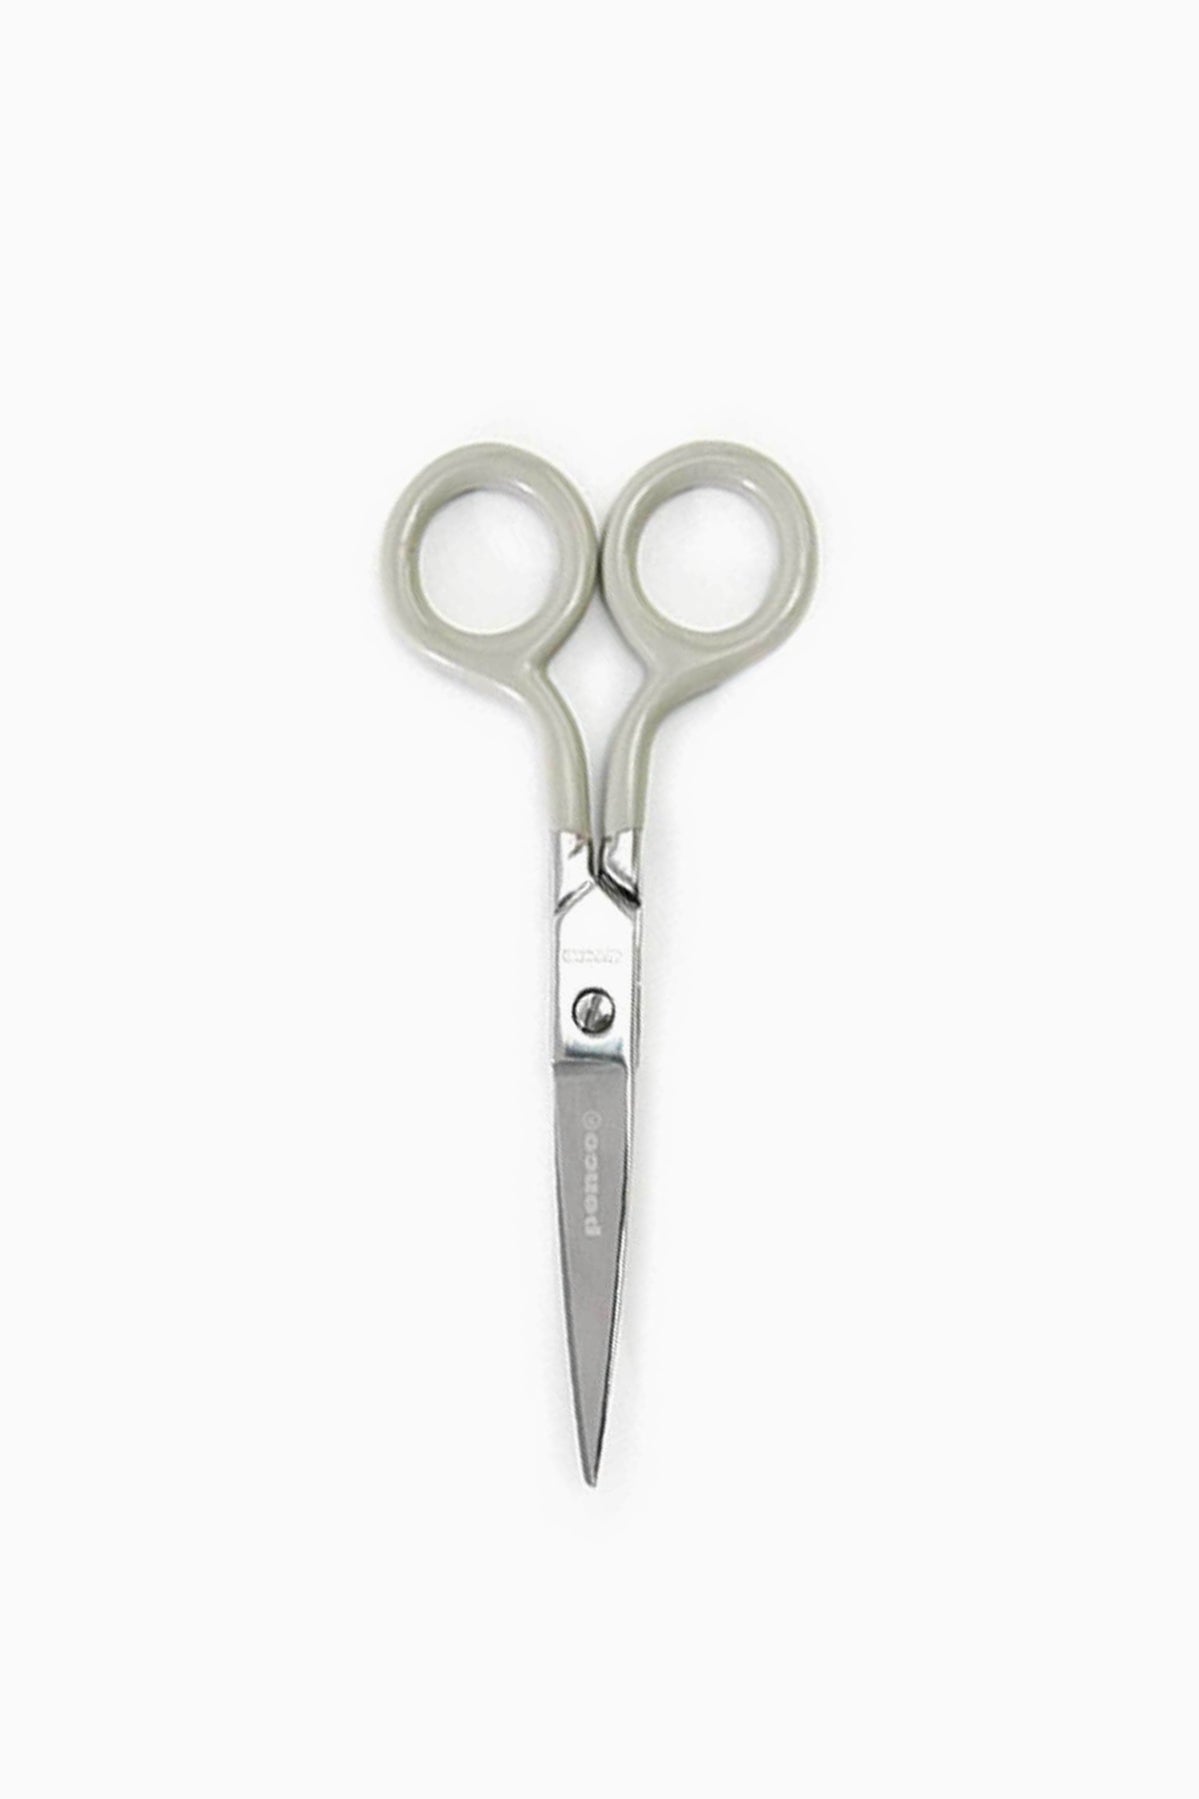 Stainless scissors ivory-Penco-[interior]-[design]-KIOSK48TH